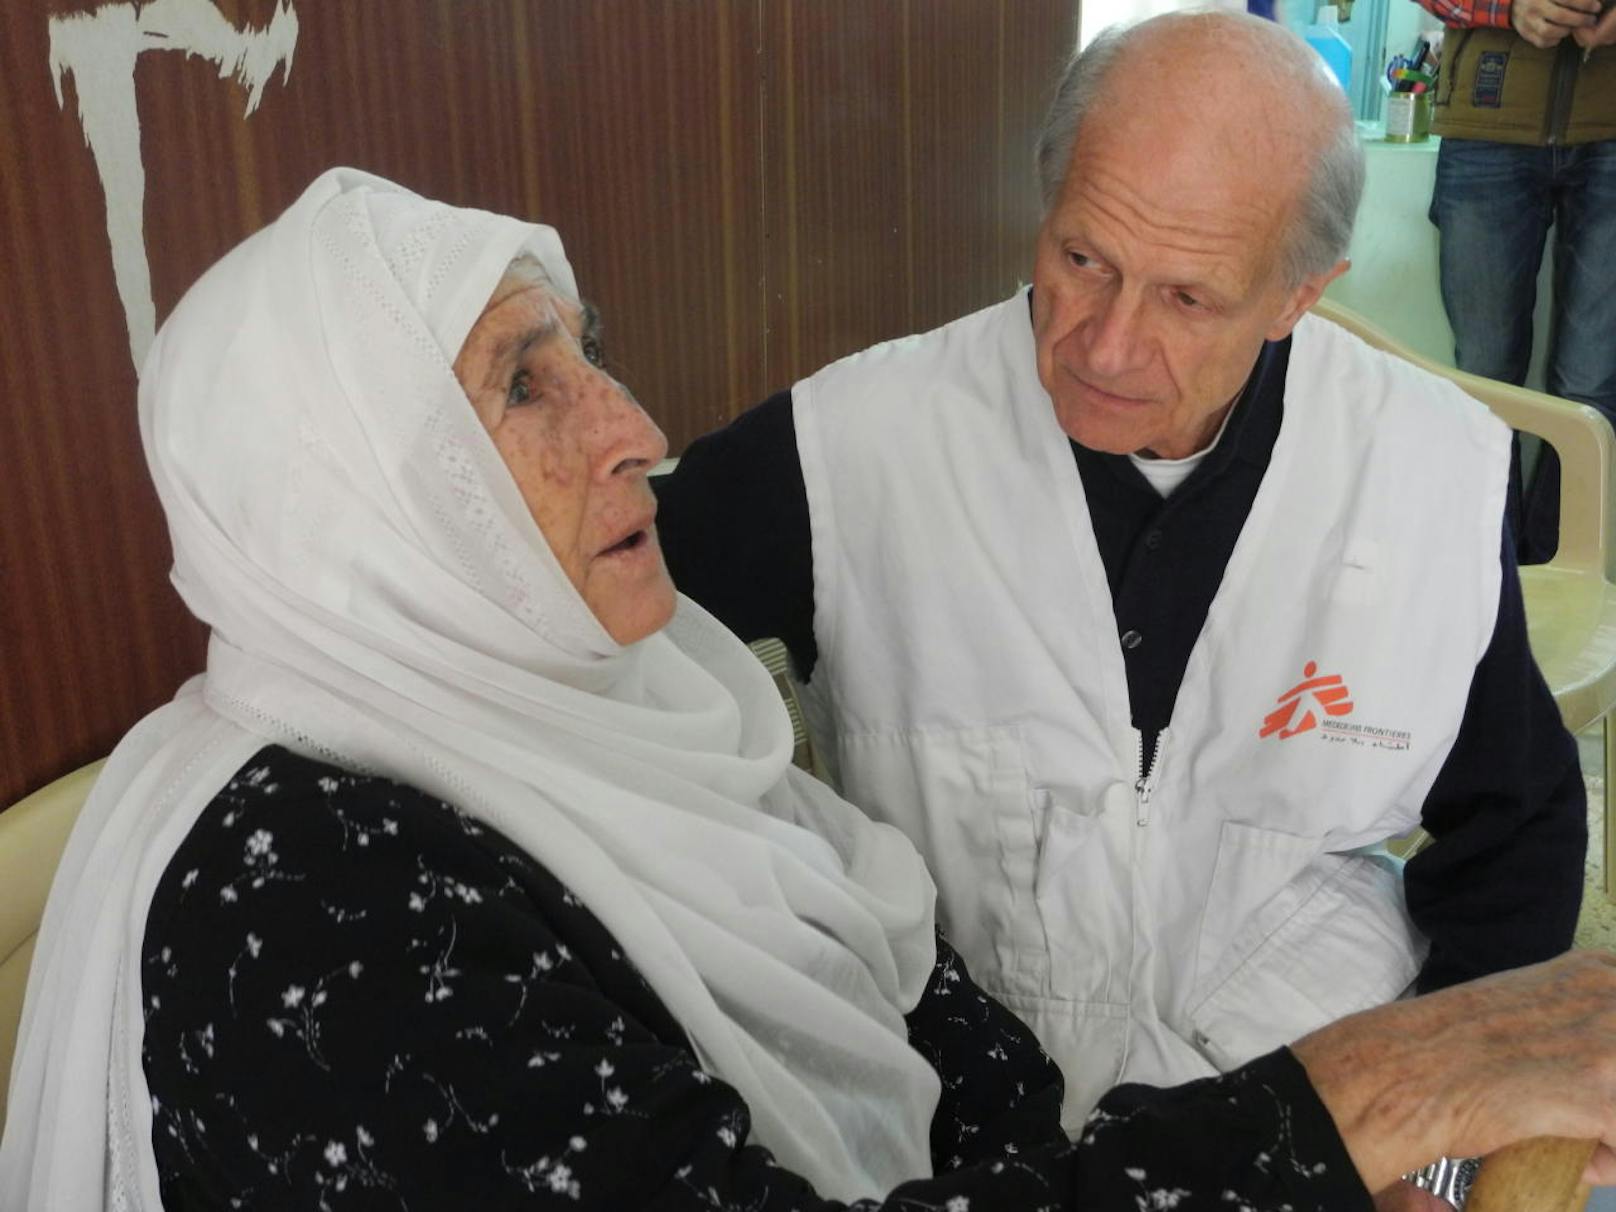 Klaus Täuber (77) ist der älteste Mediziner bei "Ärzte ohne Grenzen". Er half unter anderem im Libanon und in Indien. Aktuell ist er in Armenien.                                                  